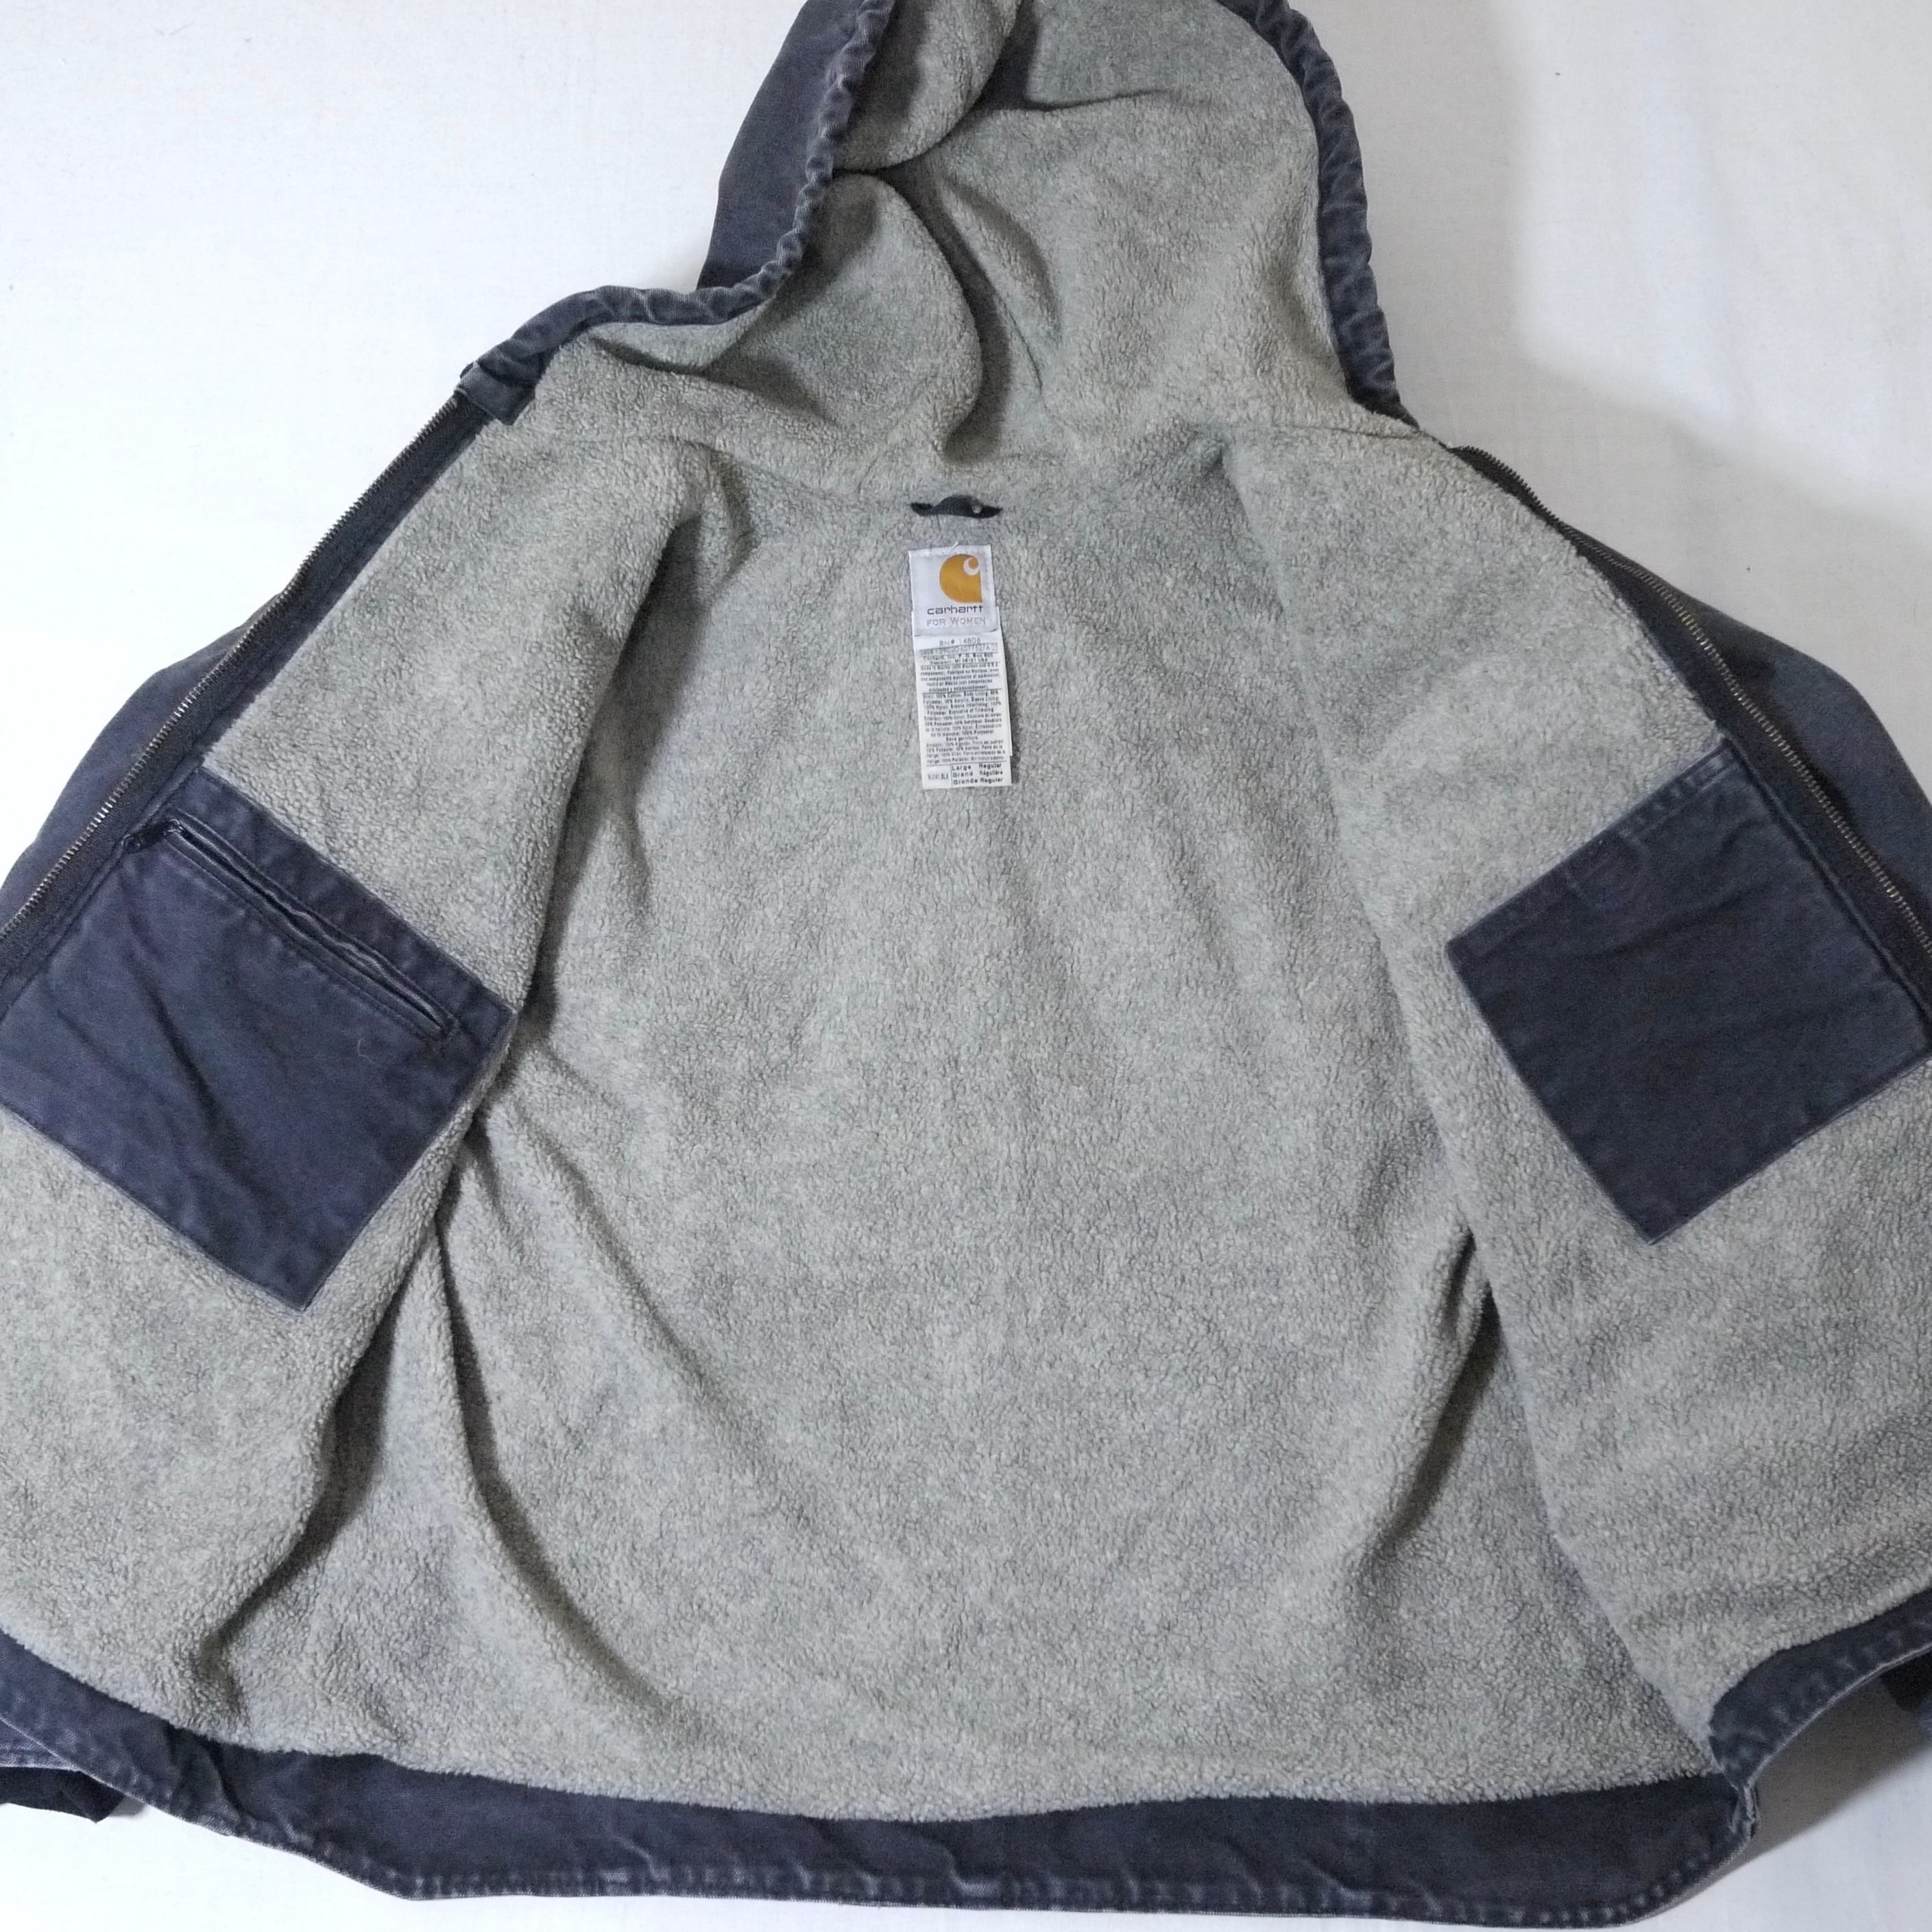 carhartt Sierra jacket SizeL(Women)